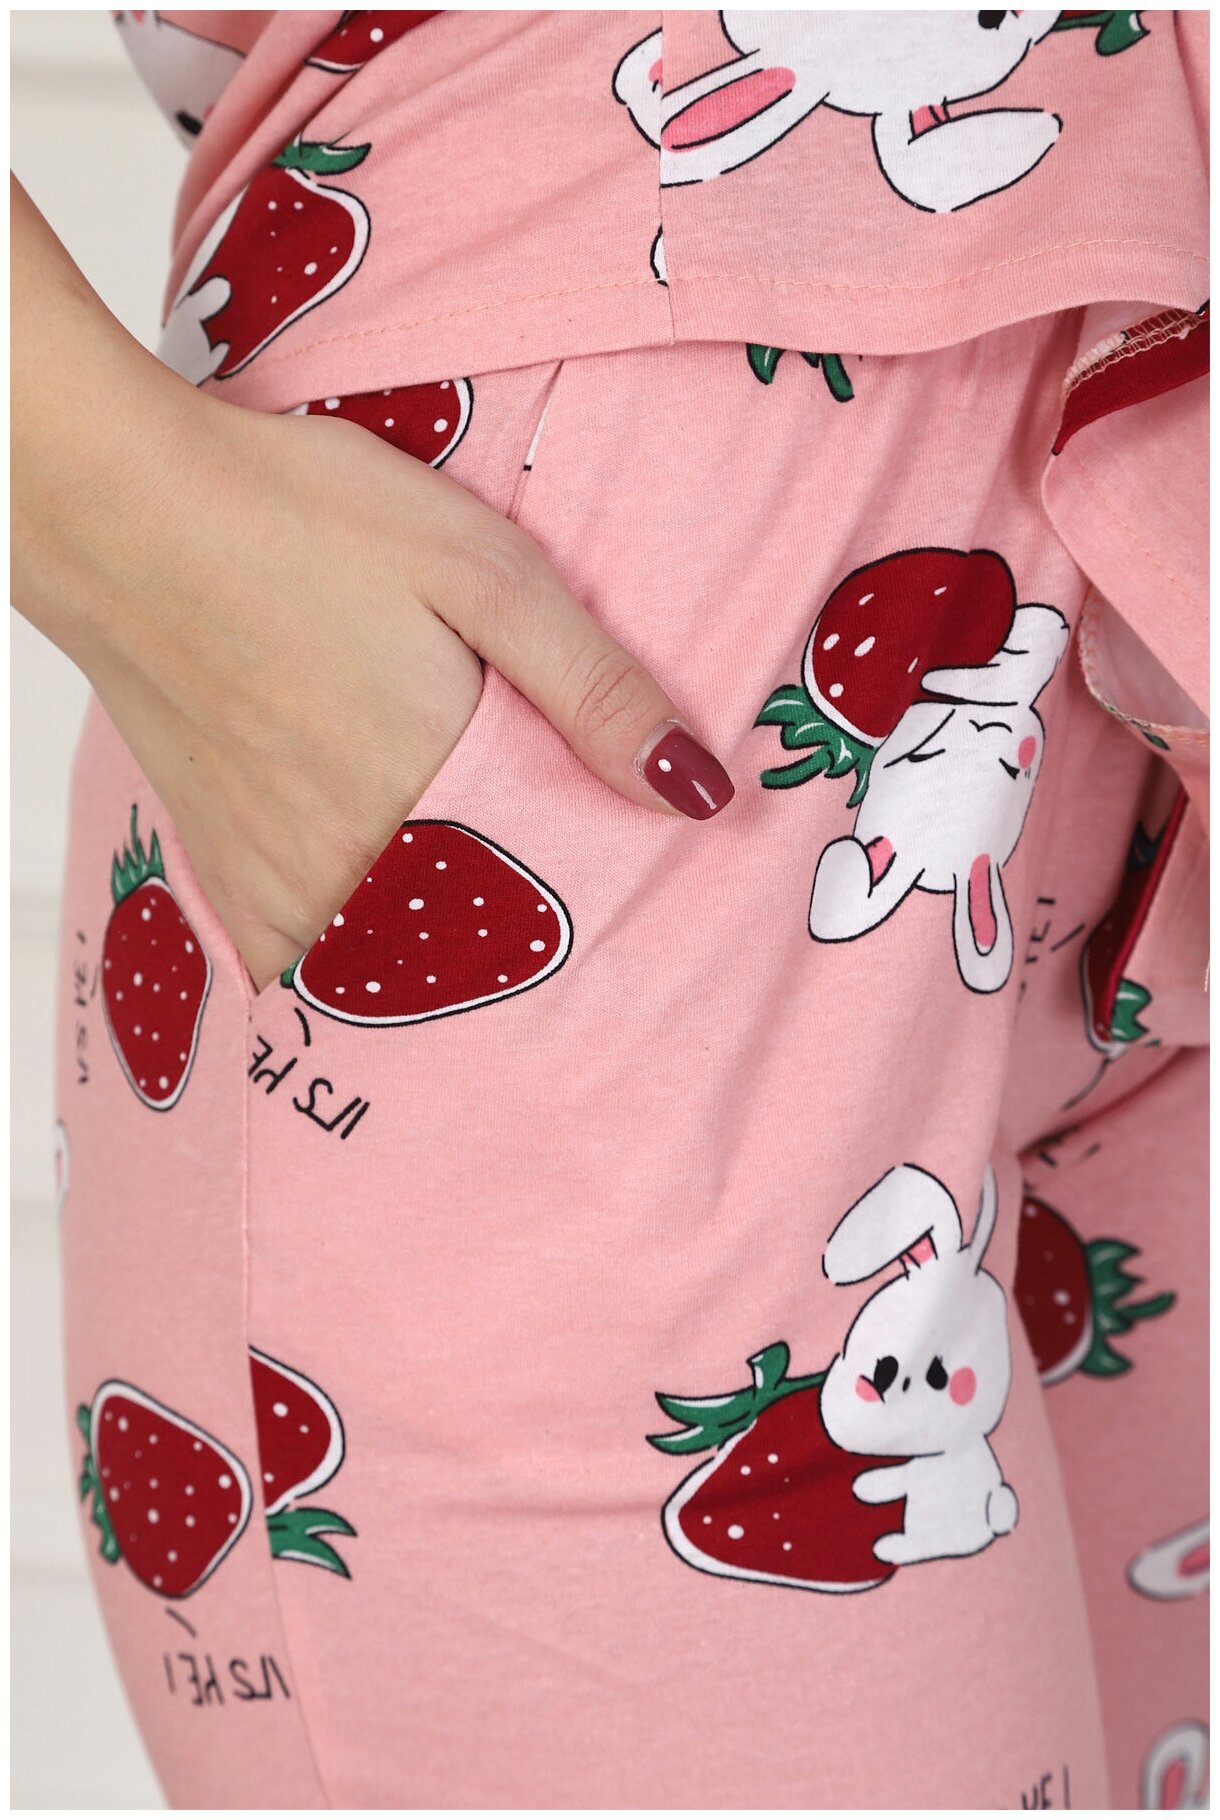 Женская пижама Клубничный зайка Розовый размер 46 Кулирка Оптима трикотаж рубашка на пуговицах с отложным воротником брюки с карманами - фотография № 3